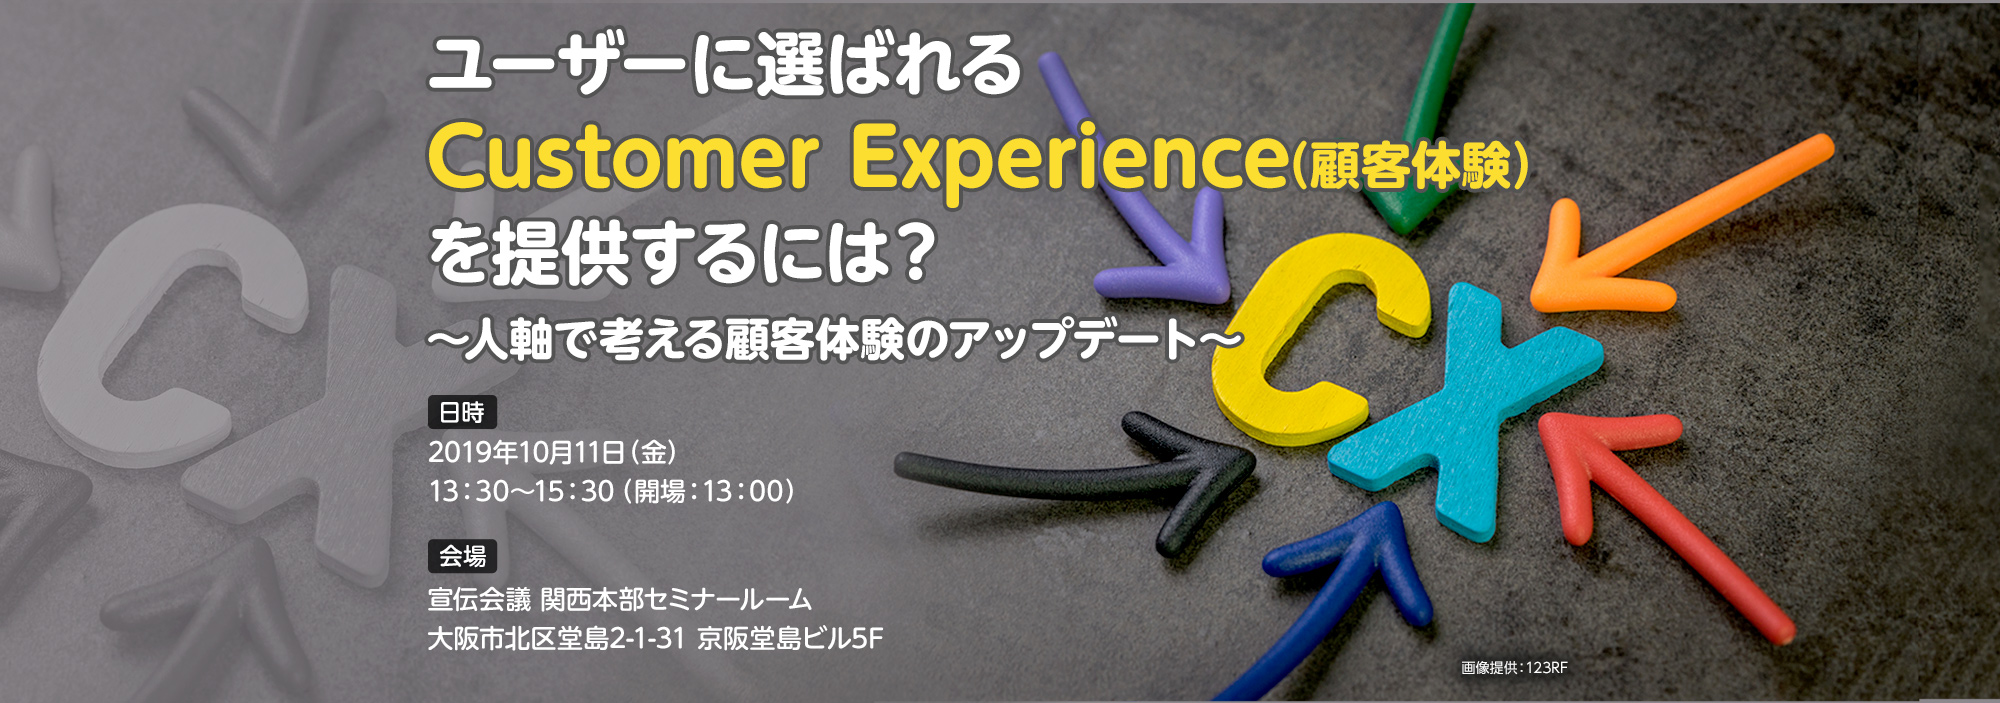 ユーザーに選ばれる「Customer Experience（顧客体験）」を提供するには？～人軸で考える顧客体験のアップデート～